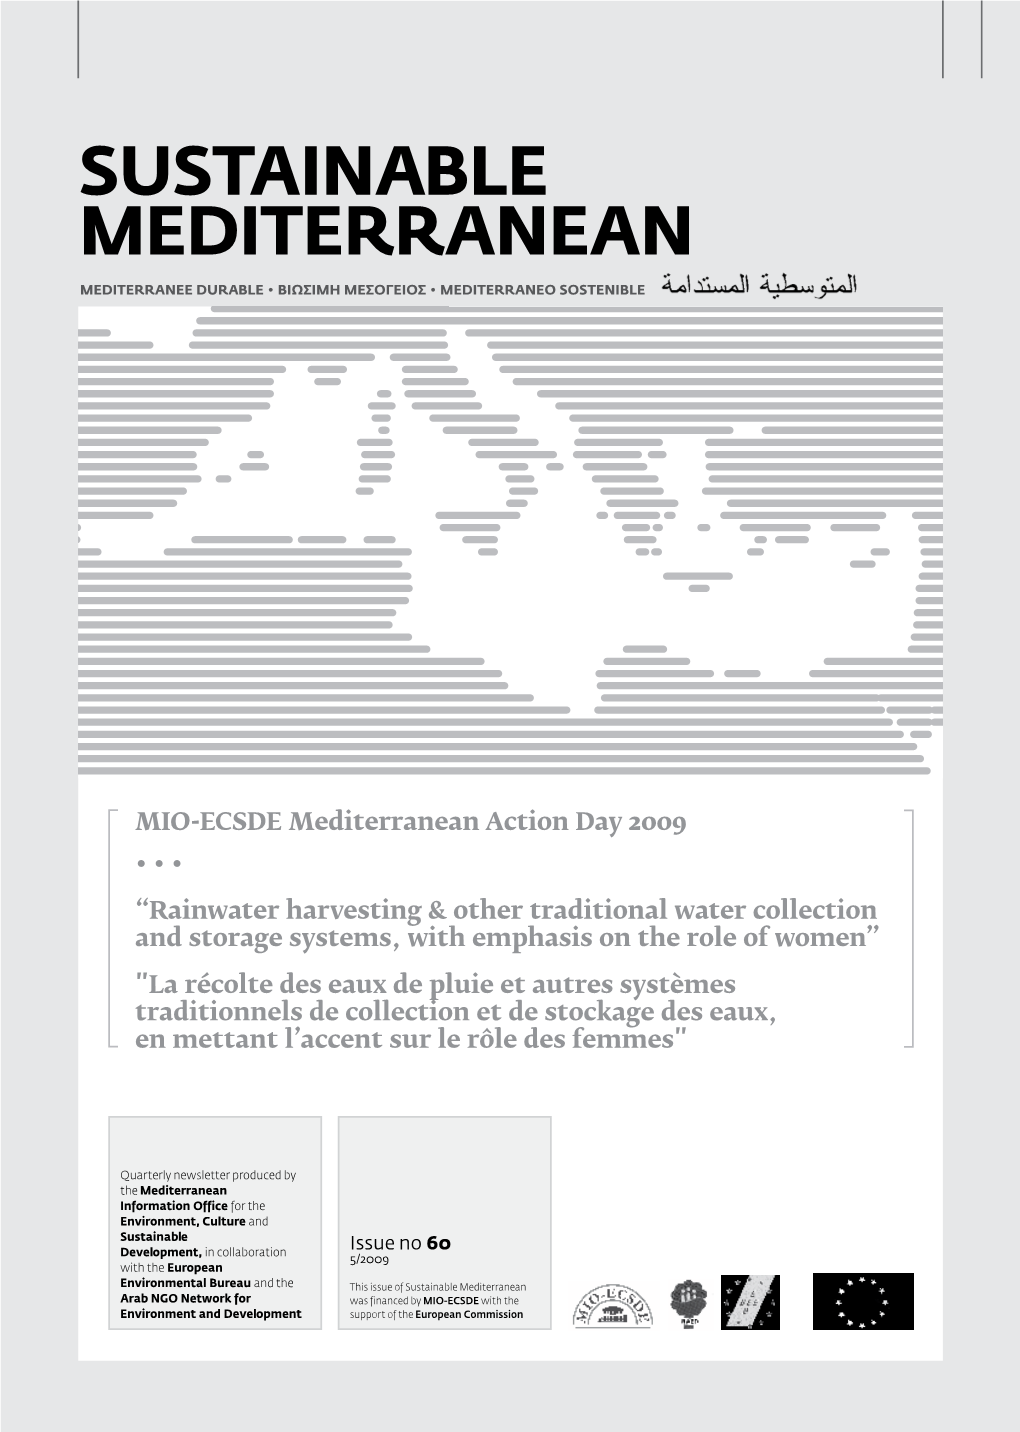 Sustainable Mediterranean MEDITERRANEE DURABLE • BIΩΣIMH MEΣOΓEIOΣ • MEDITERRANEO SOSTENIBLE